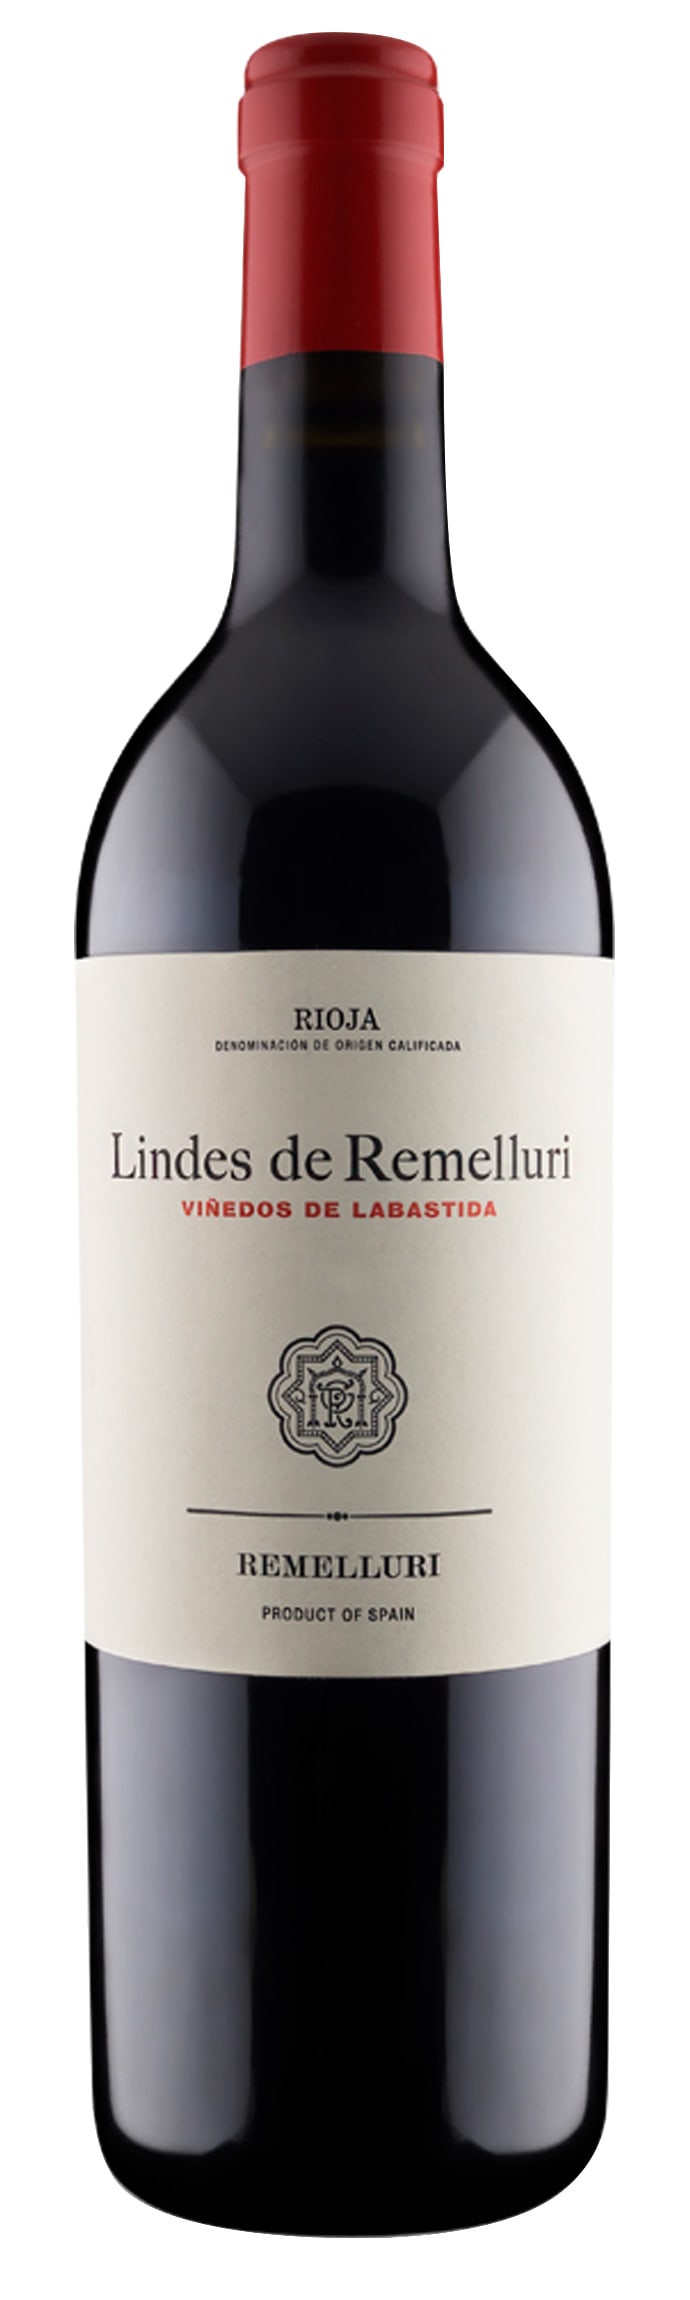 Remelluri - Rioja Lindes de Remelluri Vinedos de Labastida 2019 (750ml) (750ml)